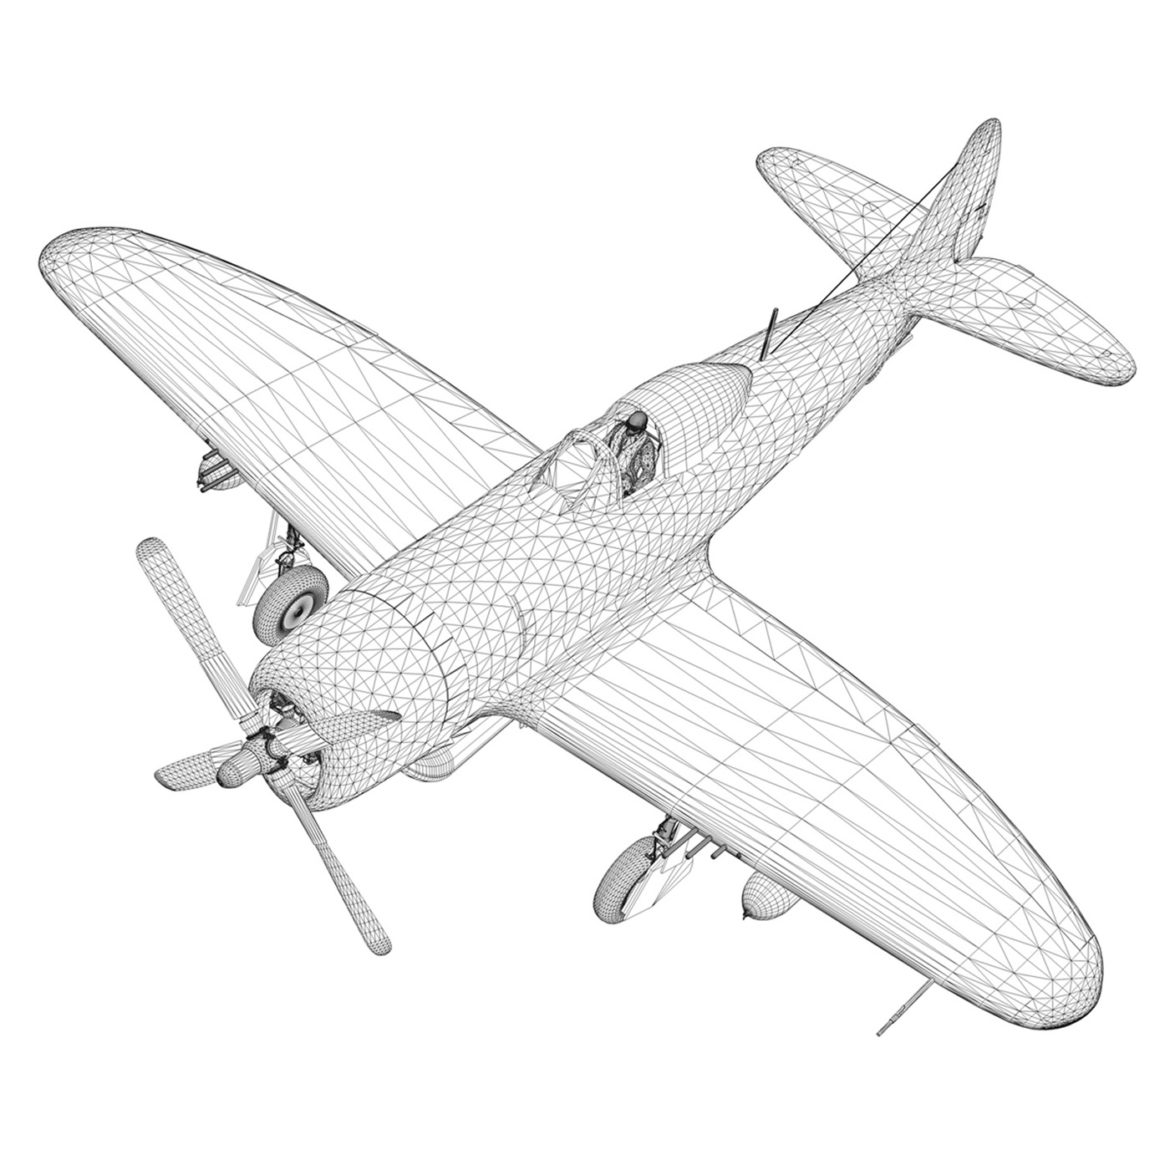 republic p-47d thunderbolt – torrid tessie 3d model 3ds c4d lwo lw lws obj fbx 303881